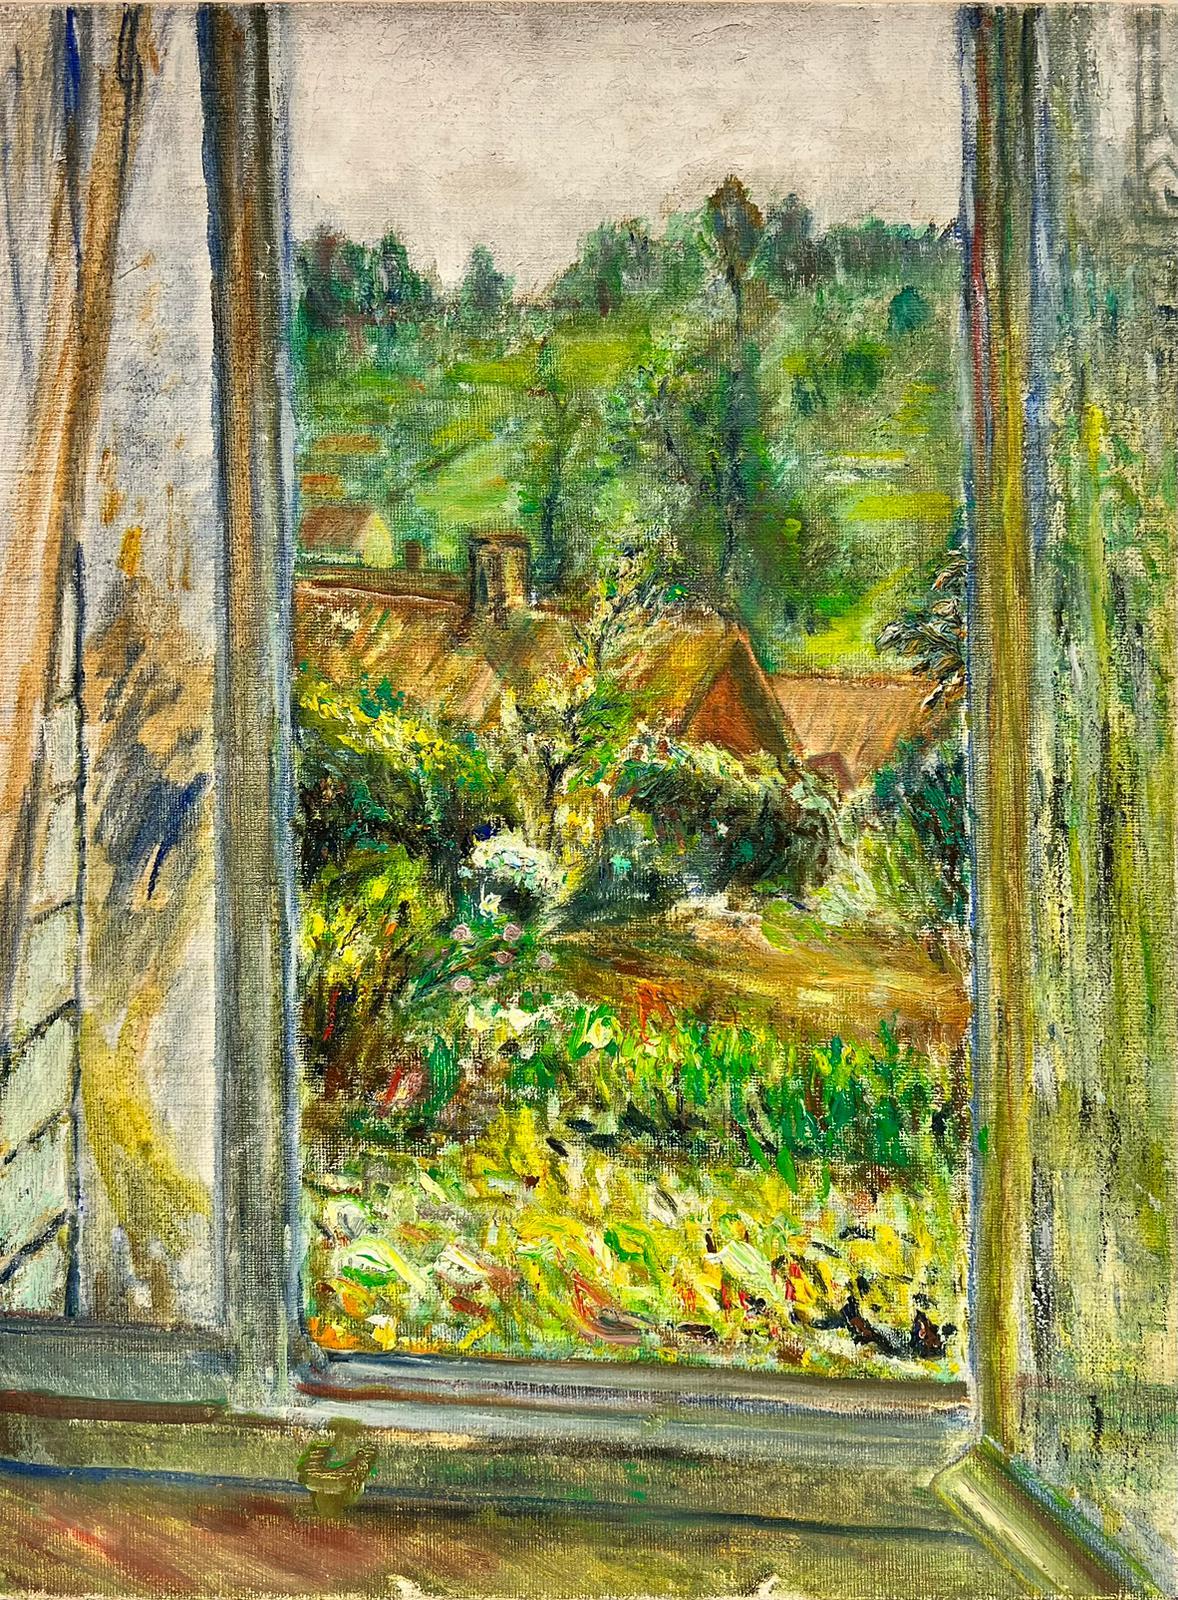 Tableau impressionniste français rêveur d'une fenêtre sur un paysage de jardin vert